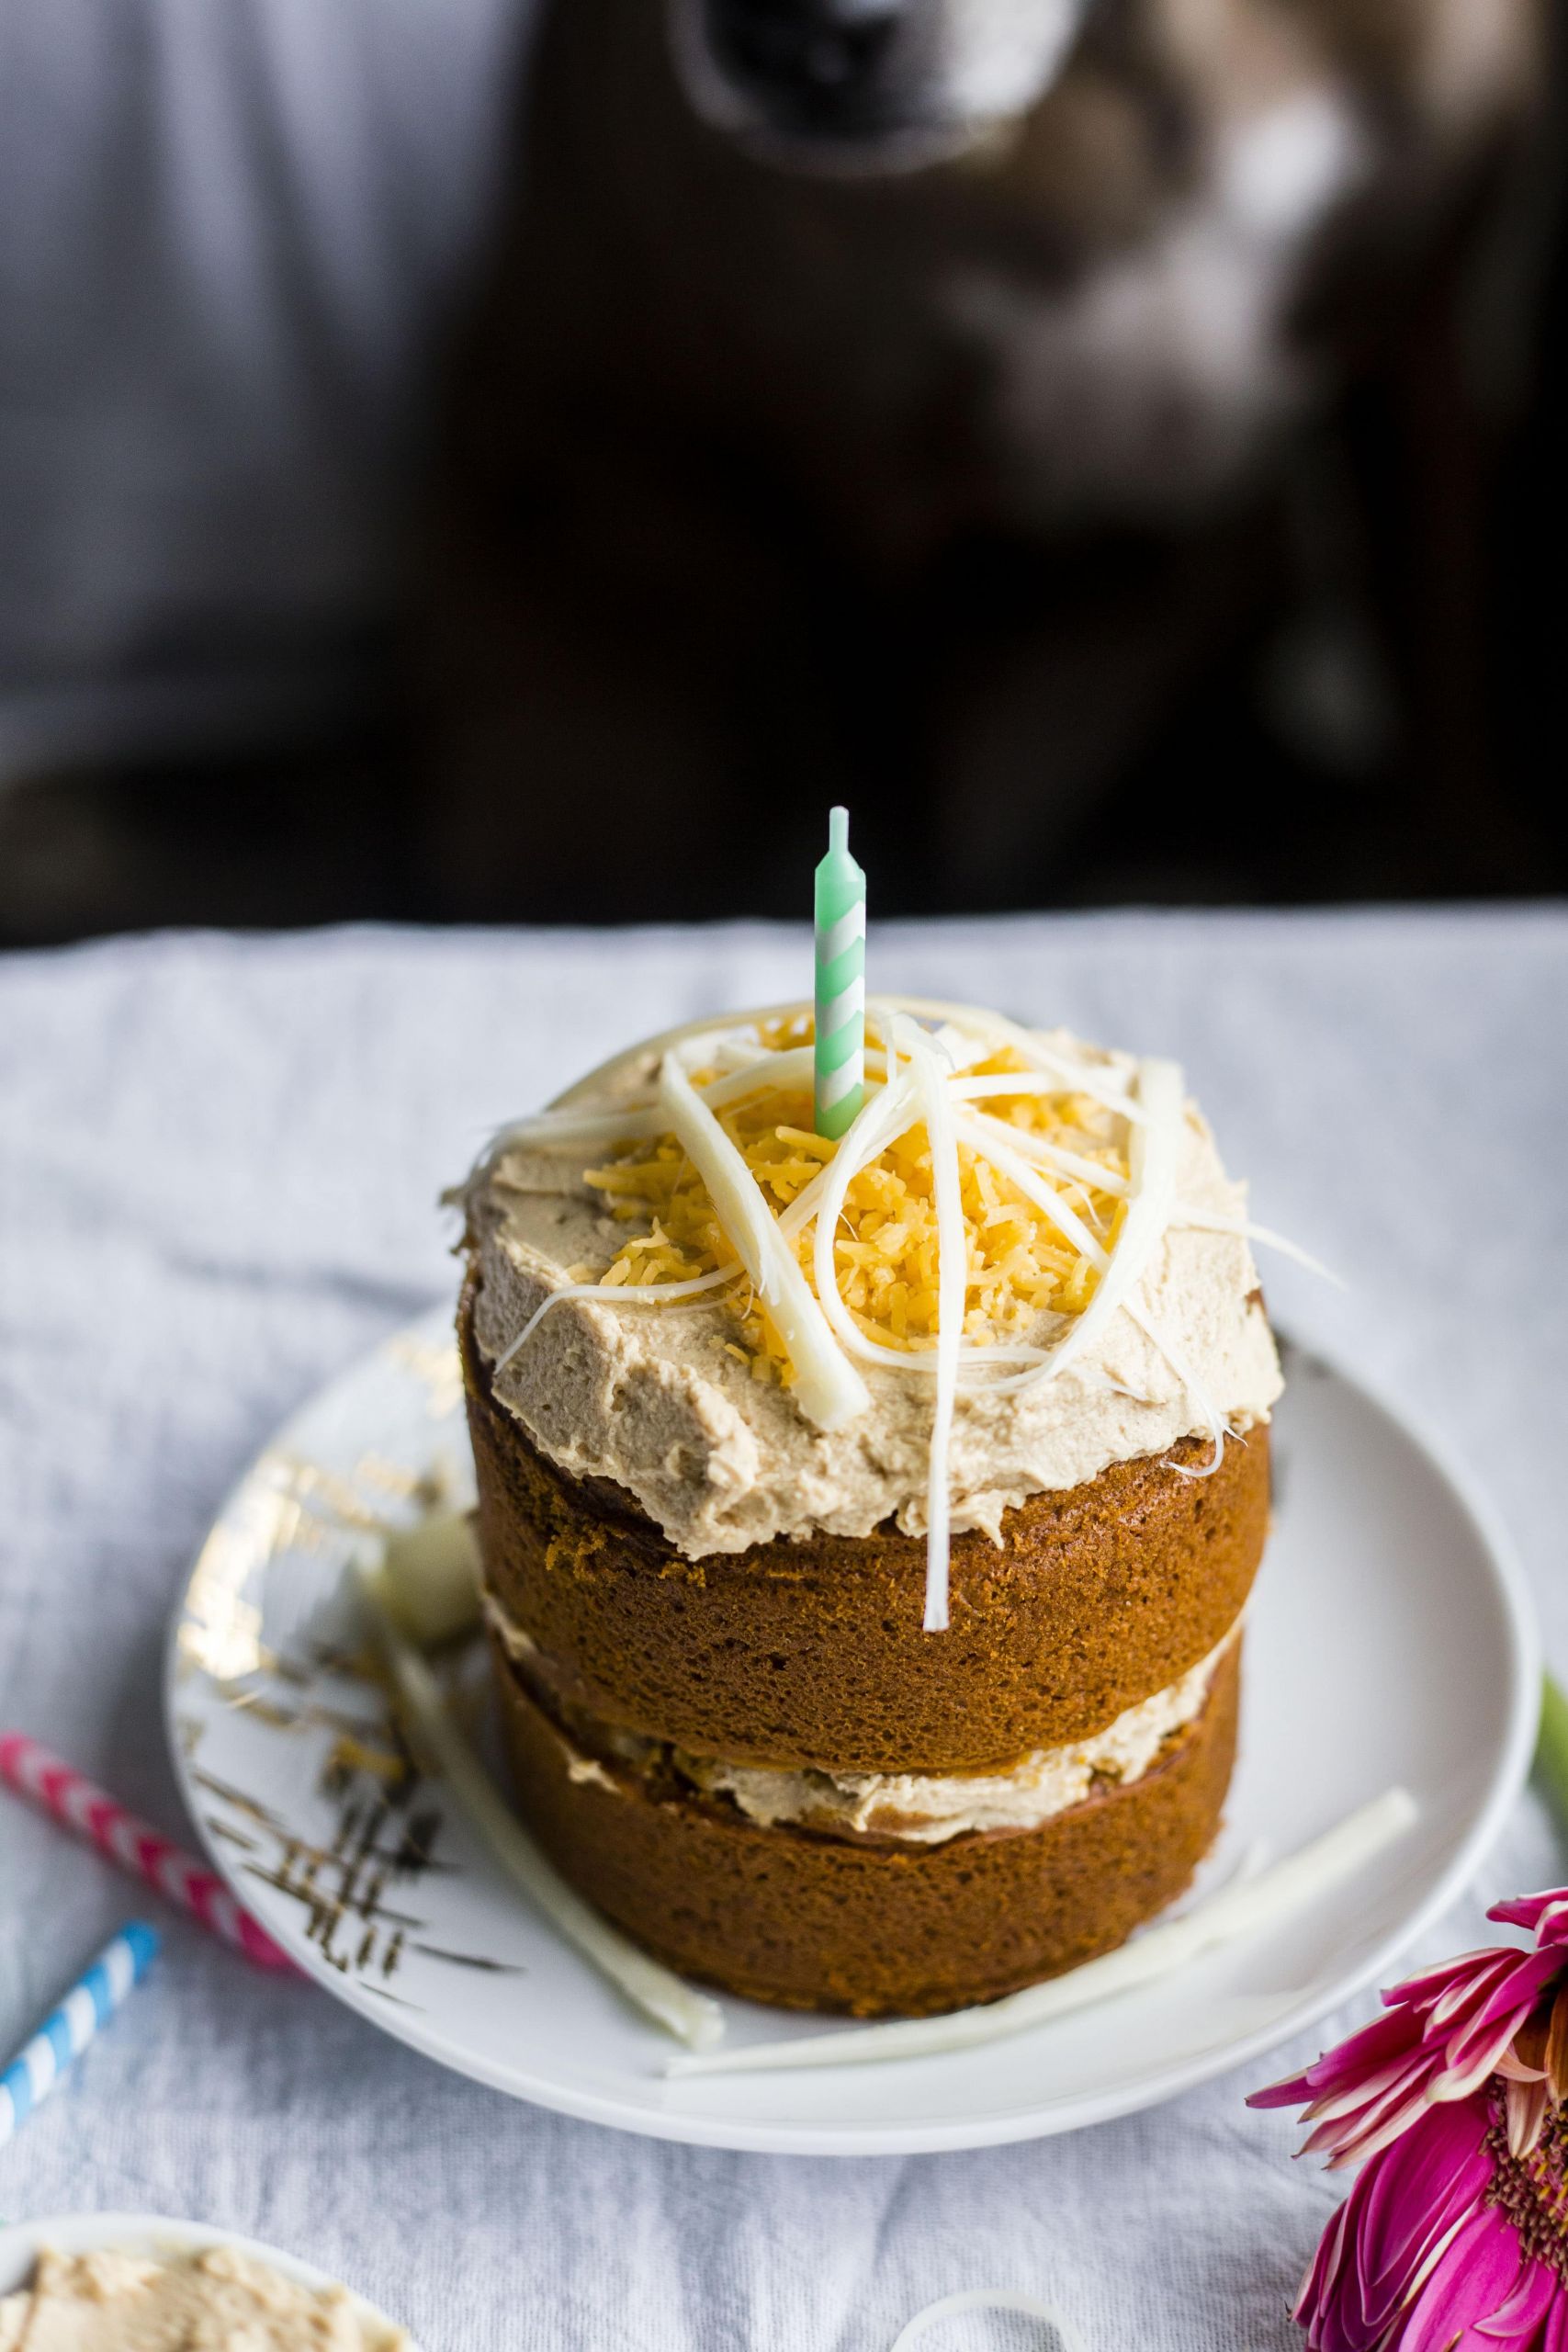 Recipes For Dog Birthday Cake
 Mini Dog Birthday Cake